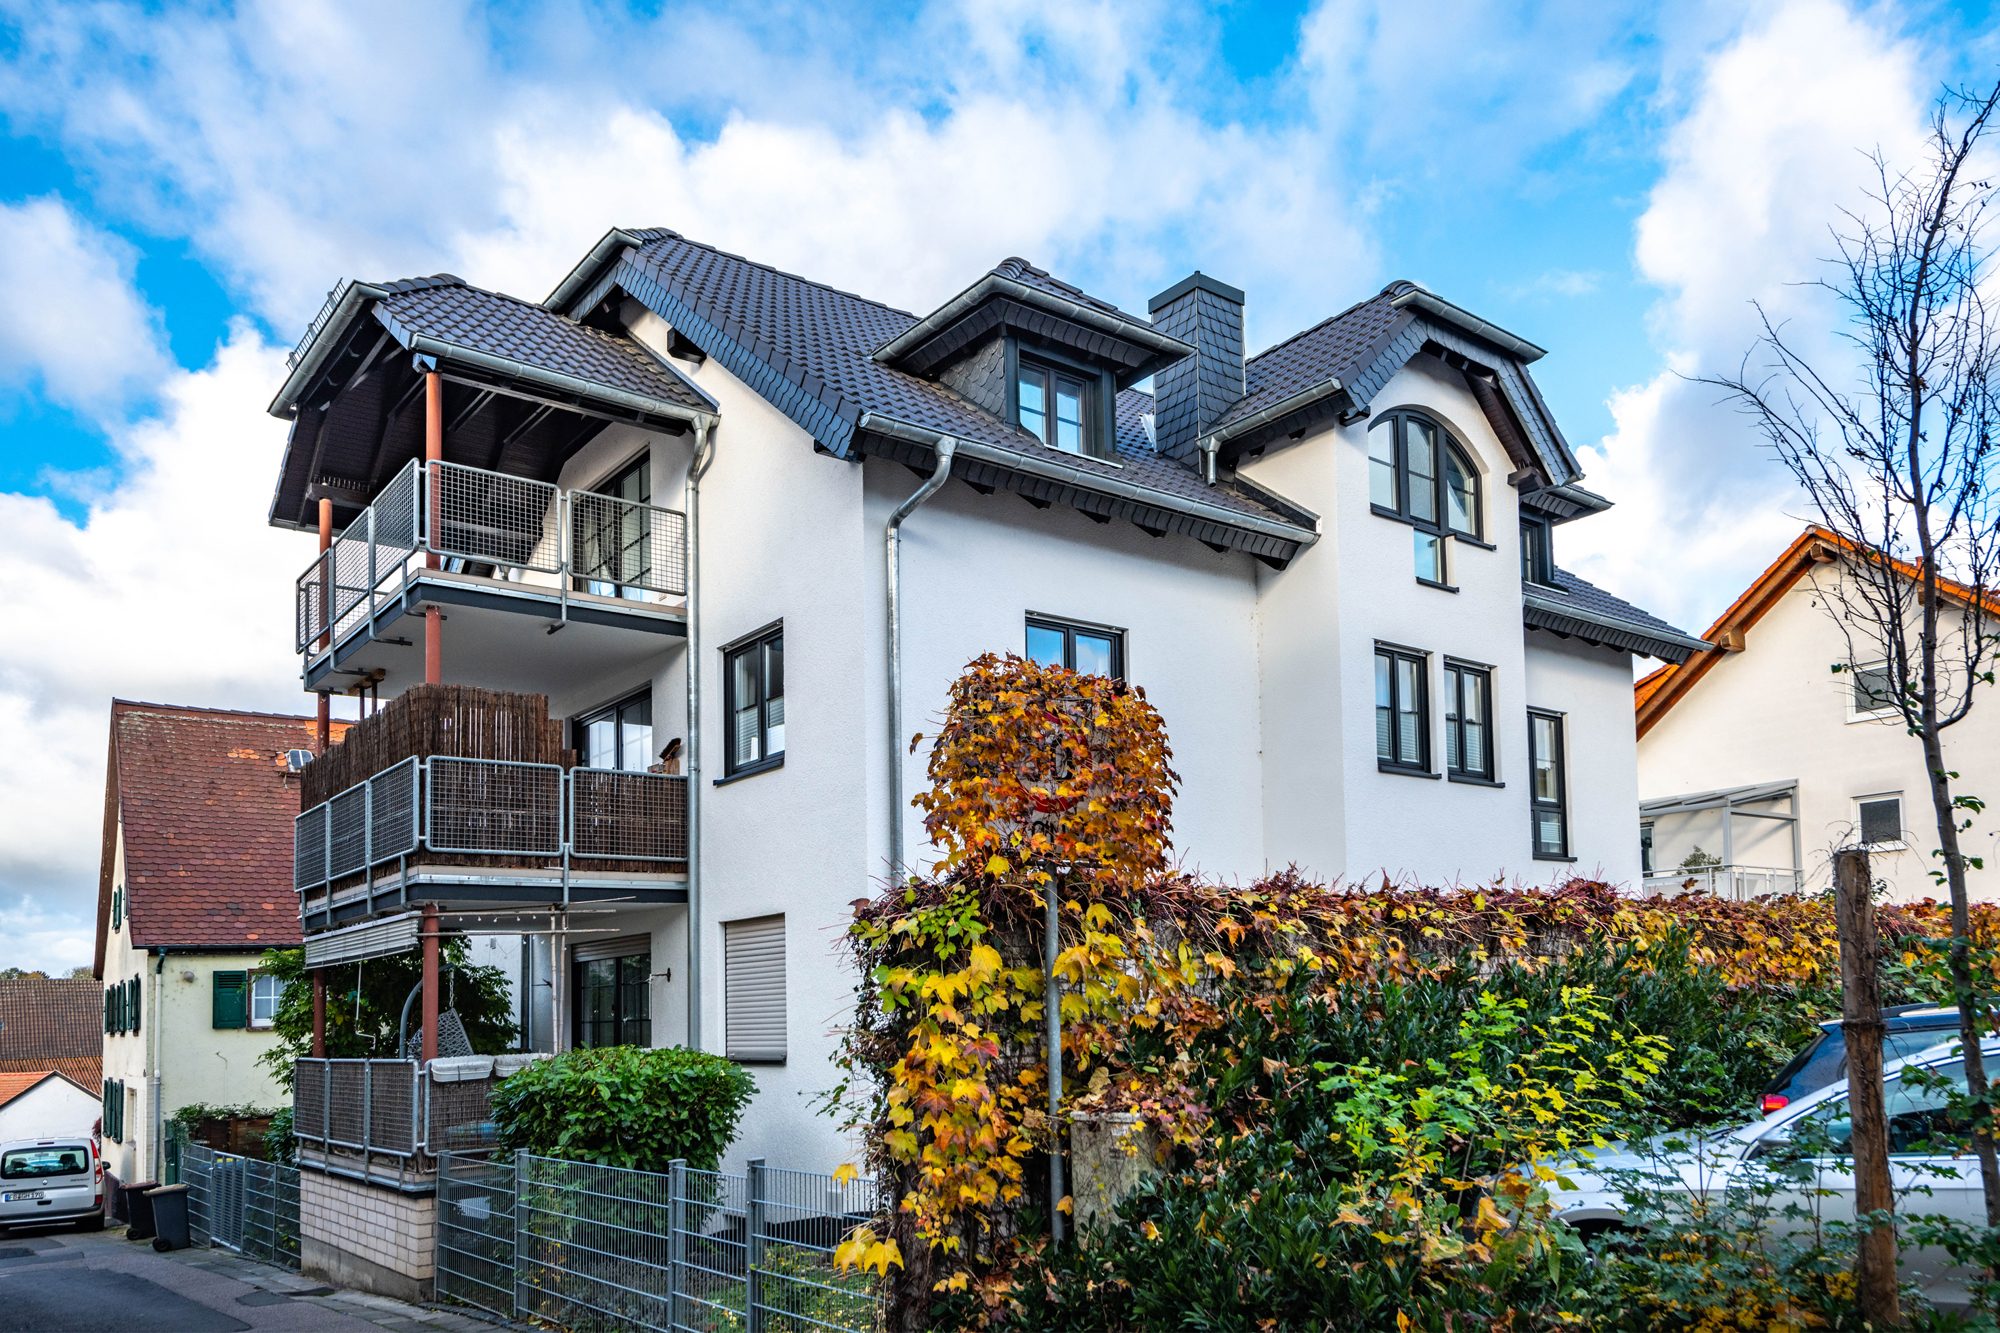 Immobilienangebot - Bad Vilbel / Dortelweil - Alle - Bad-Vilbel: Großzügige 4-Zimmer-Wohnung mit tollem Grundriss in ruhiger und beliebter Wohnlage